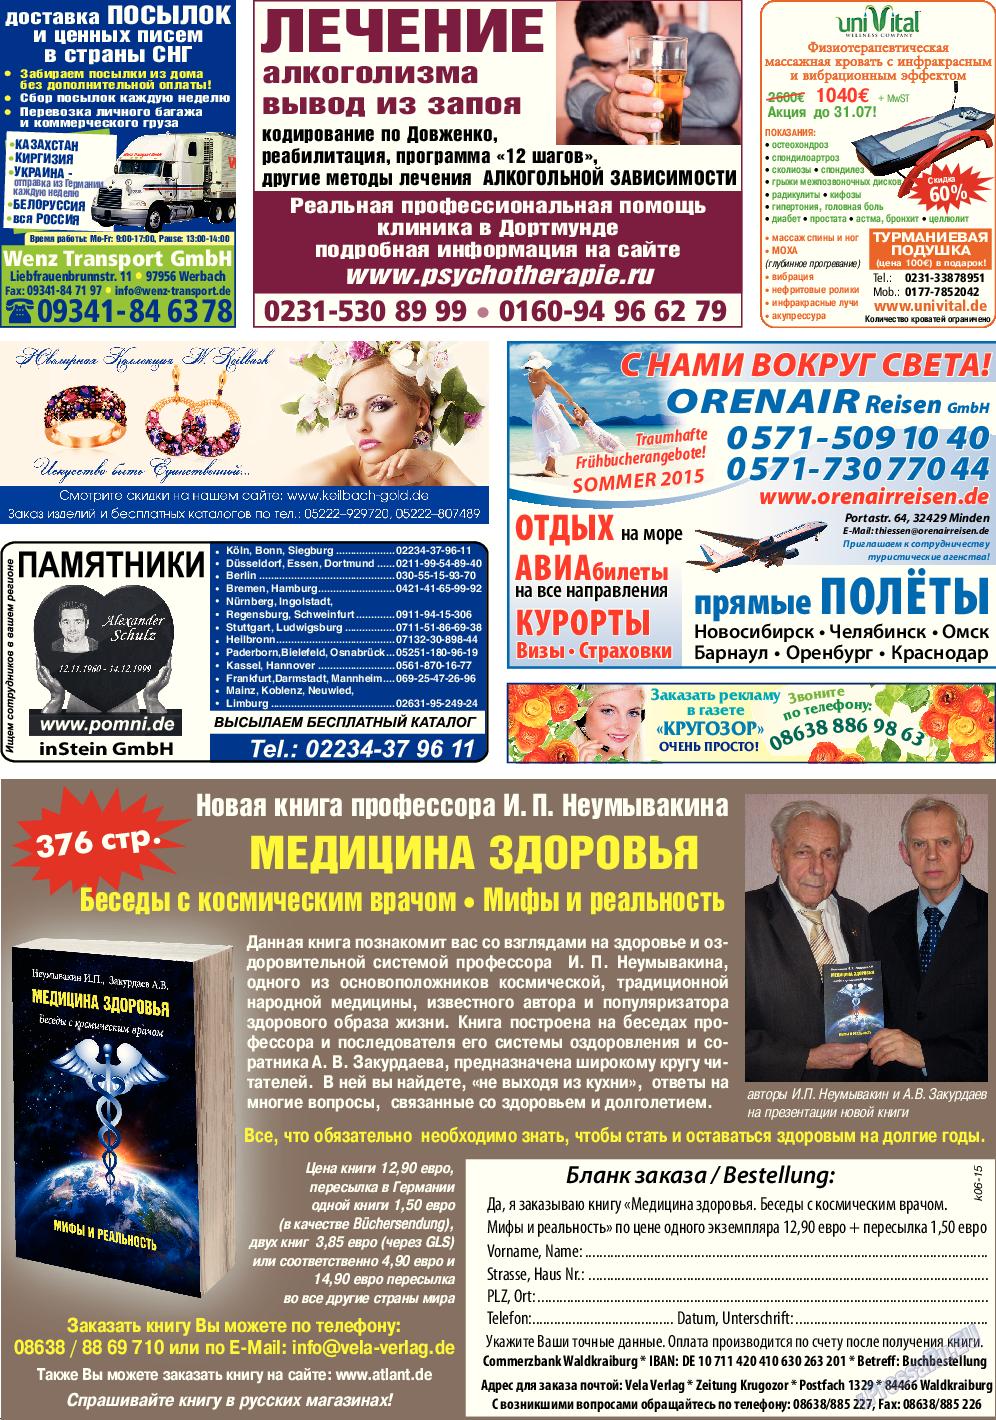 Кругозор (газета). 2015 год, номер 6, стр. 32